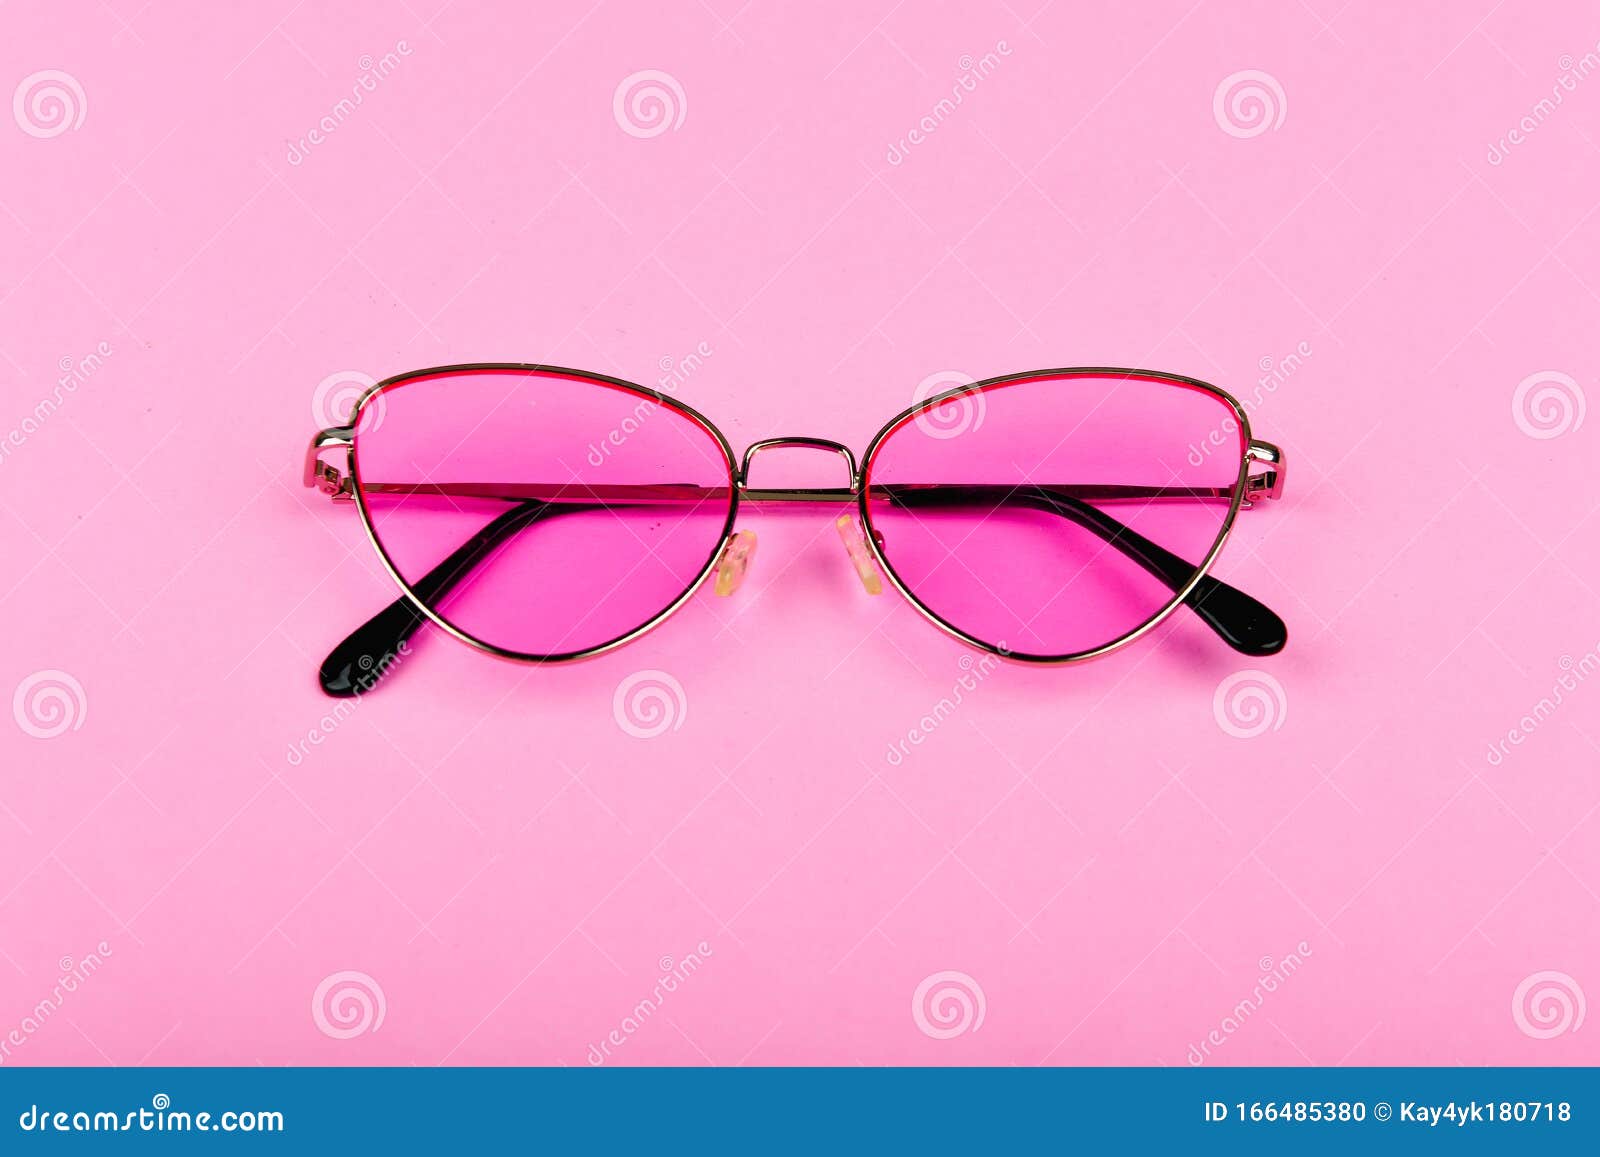 Розовыми очками во внутрь. Розовые солнцезащитные очки. Очки на розовом фоне. Темные очки розовые. В розовых очках.